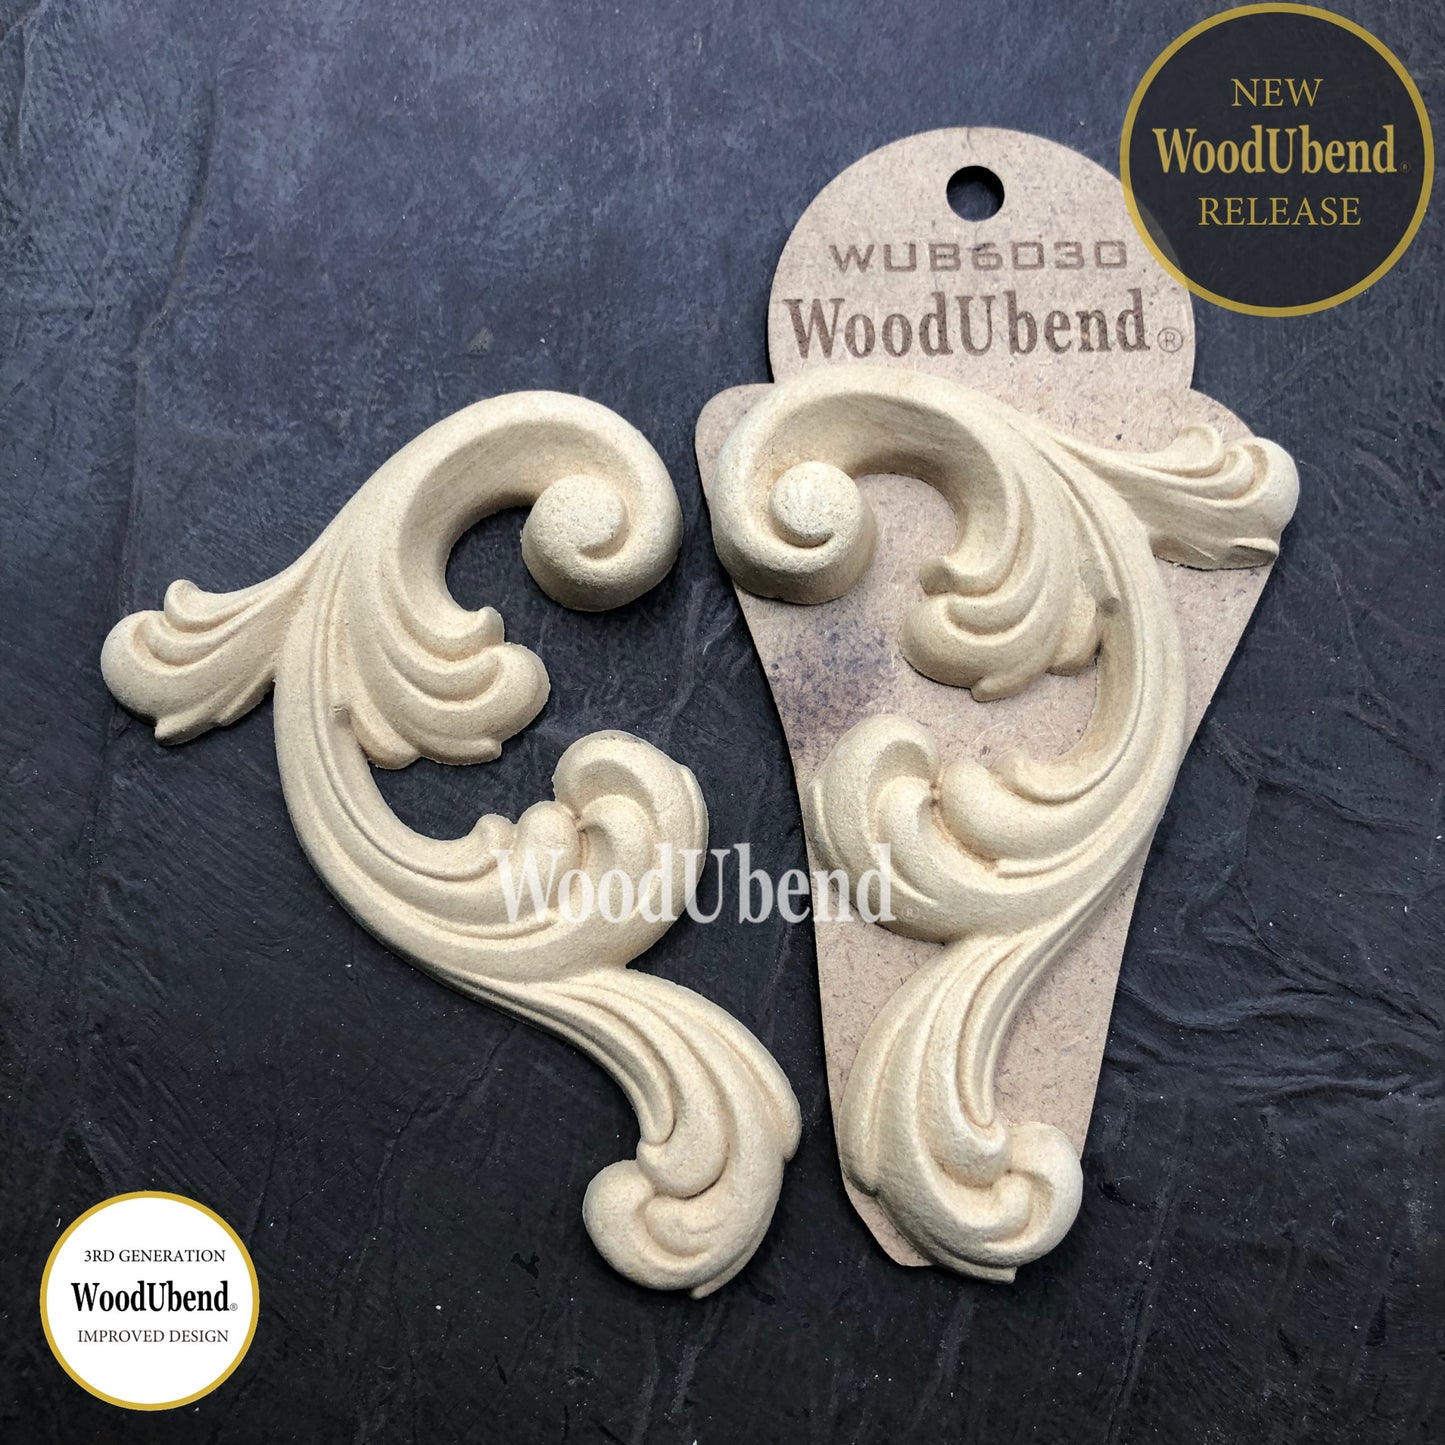 Woodubend Set of Scrolls WUB6030 12.5x8cm